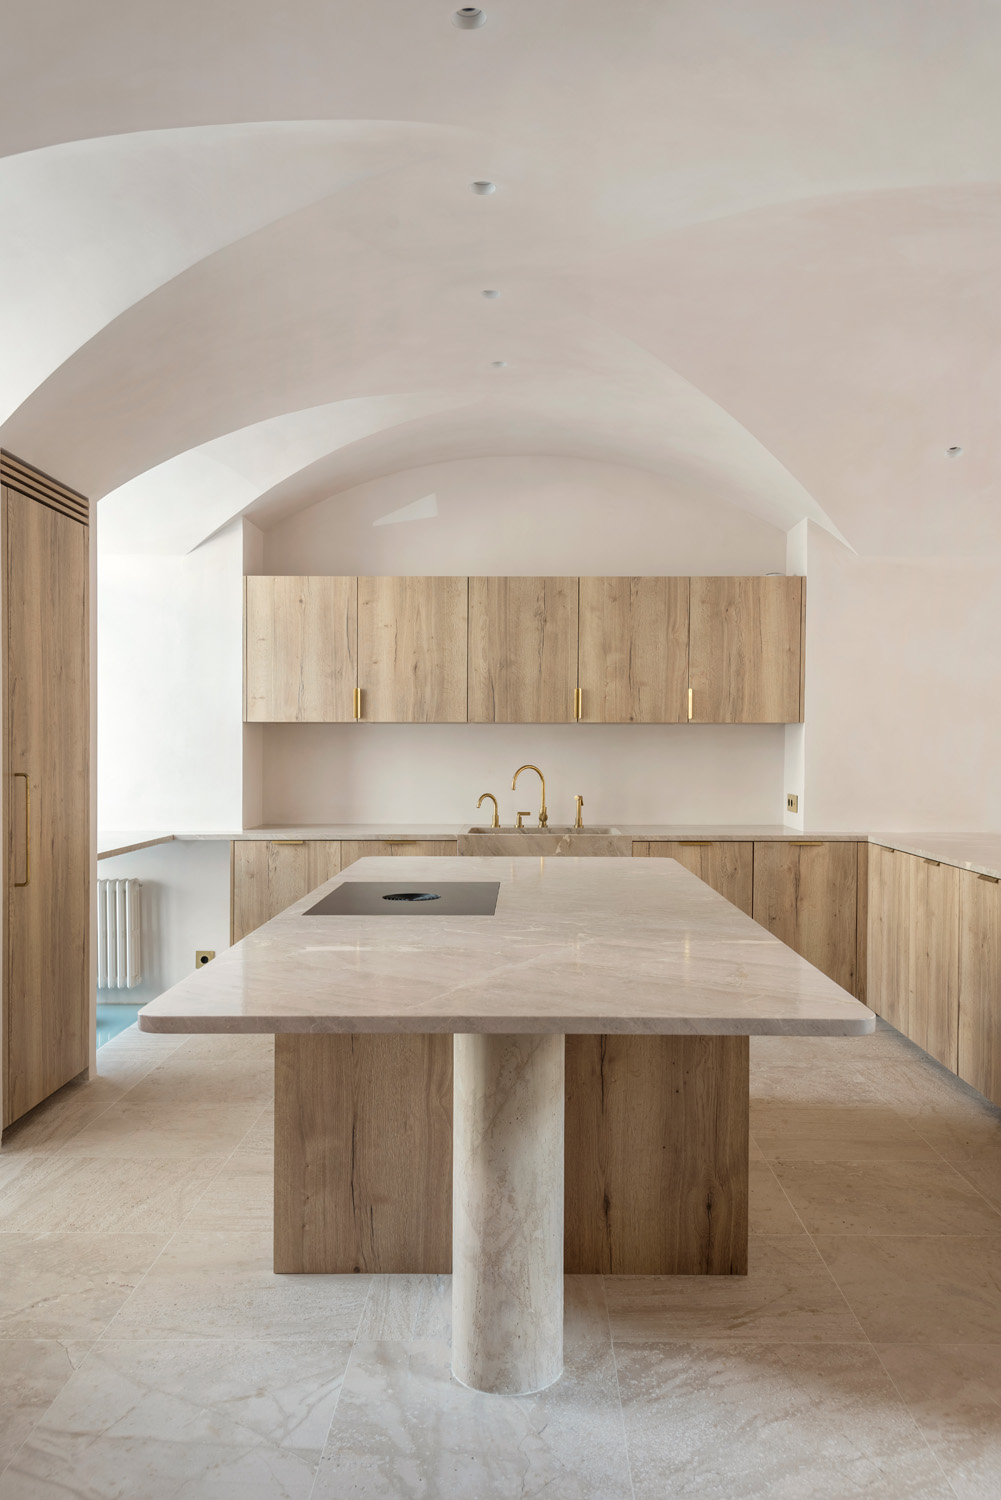 Kitchen Santa Catalina Moredesign - luxury architecture and design in Ibiza